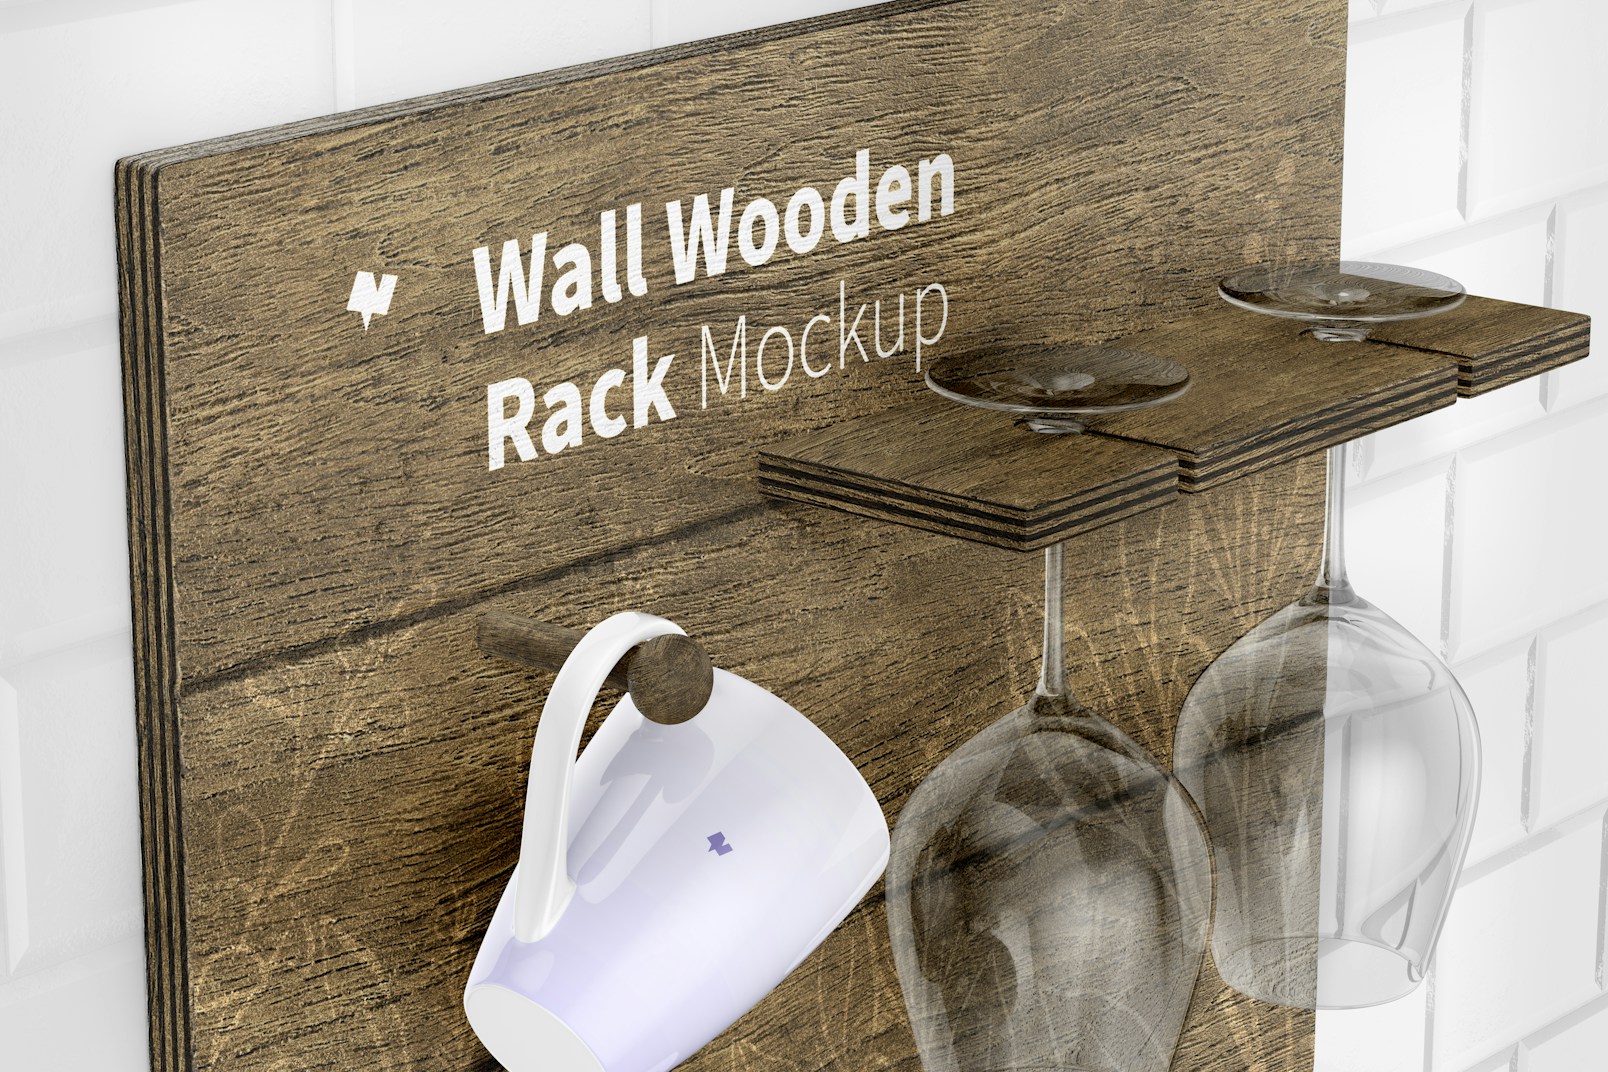 Wall Wooden Rack Mockup, Close Up